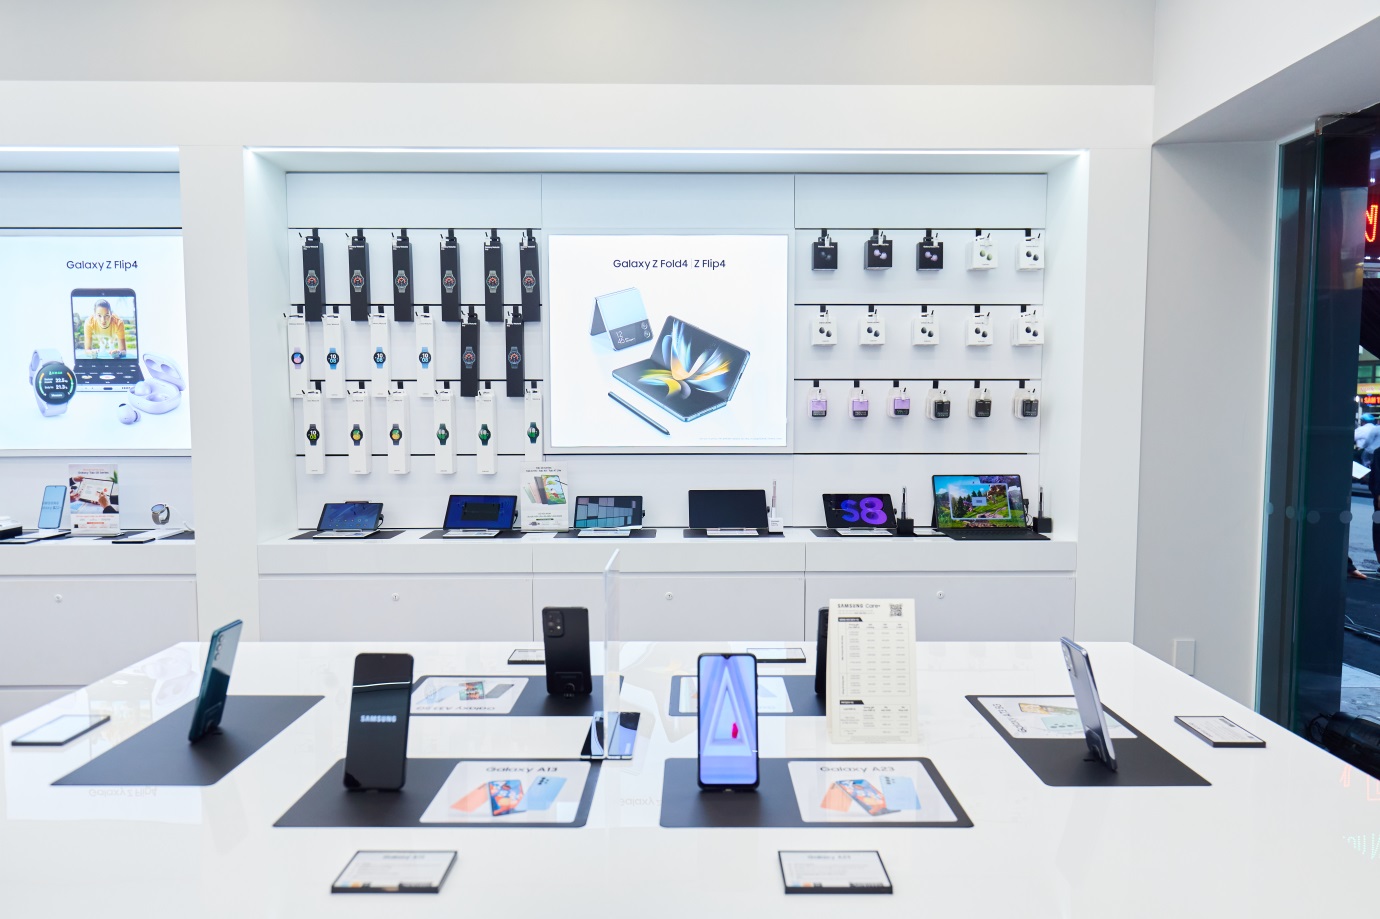 Khai trương chuỗi cửa hàng trải nghiệm Samsung Galaxy House - Ảnh 2.